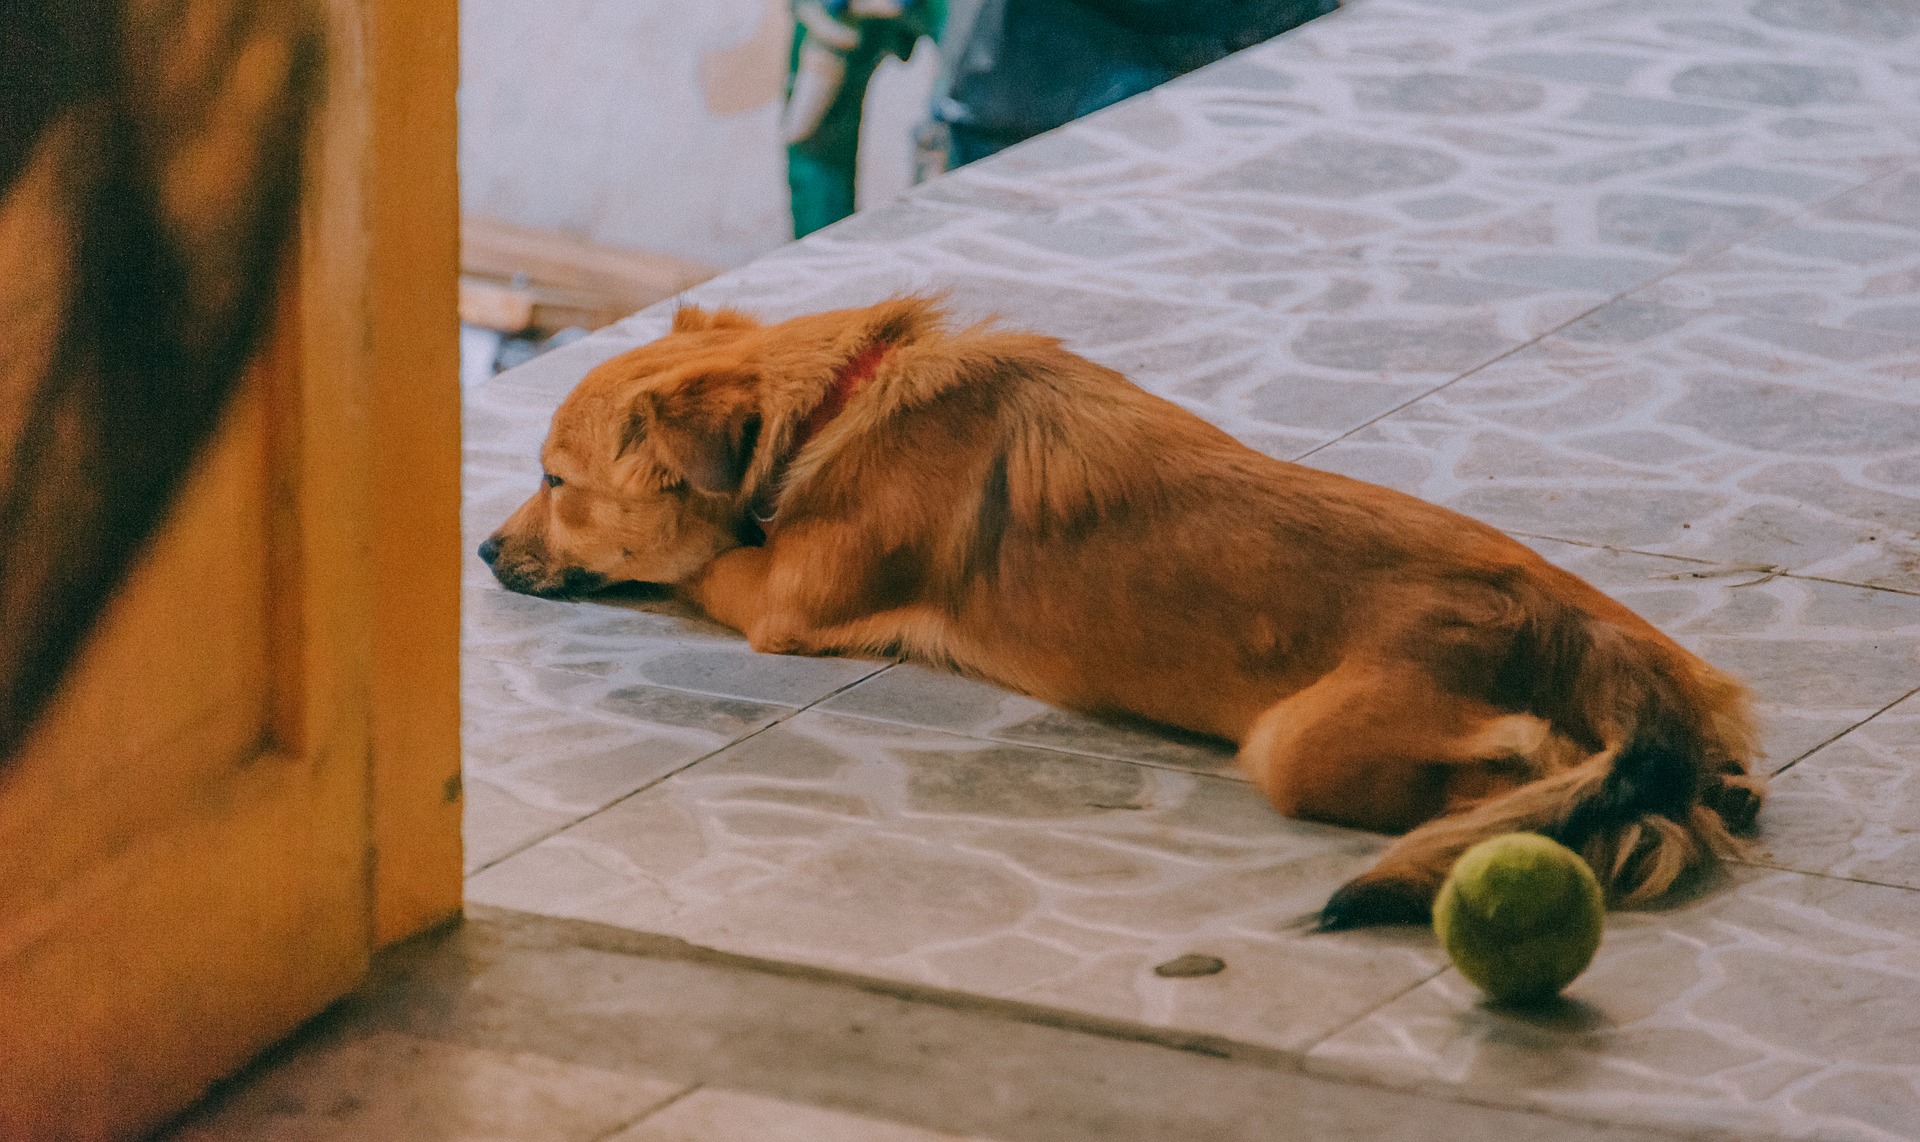 Najczęstszą przyczyną kaszlu u psa są banalne przeziębienia i zapalenia górnych dróg oddechowych. Zdarza się to – podobnie jak u człowieka – w przypadku przemoczenia, przechłodzenia organizmu, które umożliwia namnażanie się chorobotwórczych drobnoustrojów. 